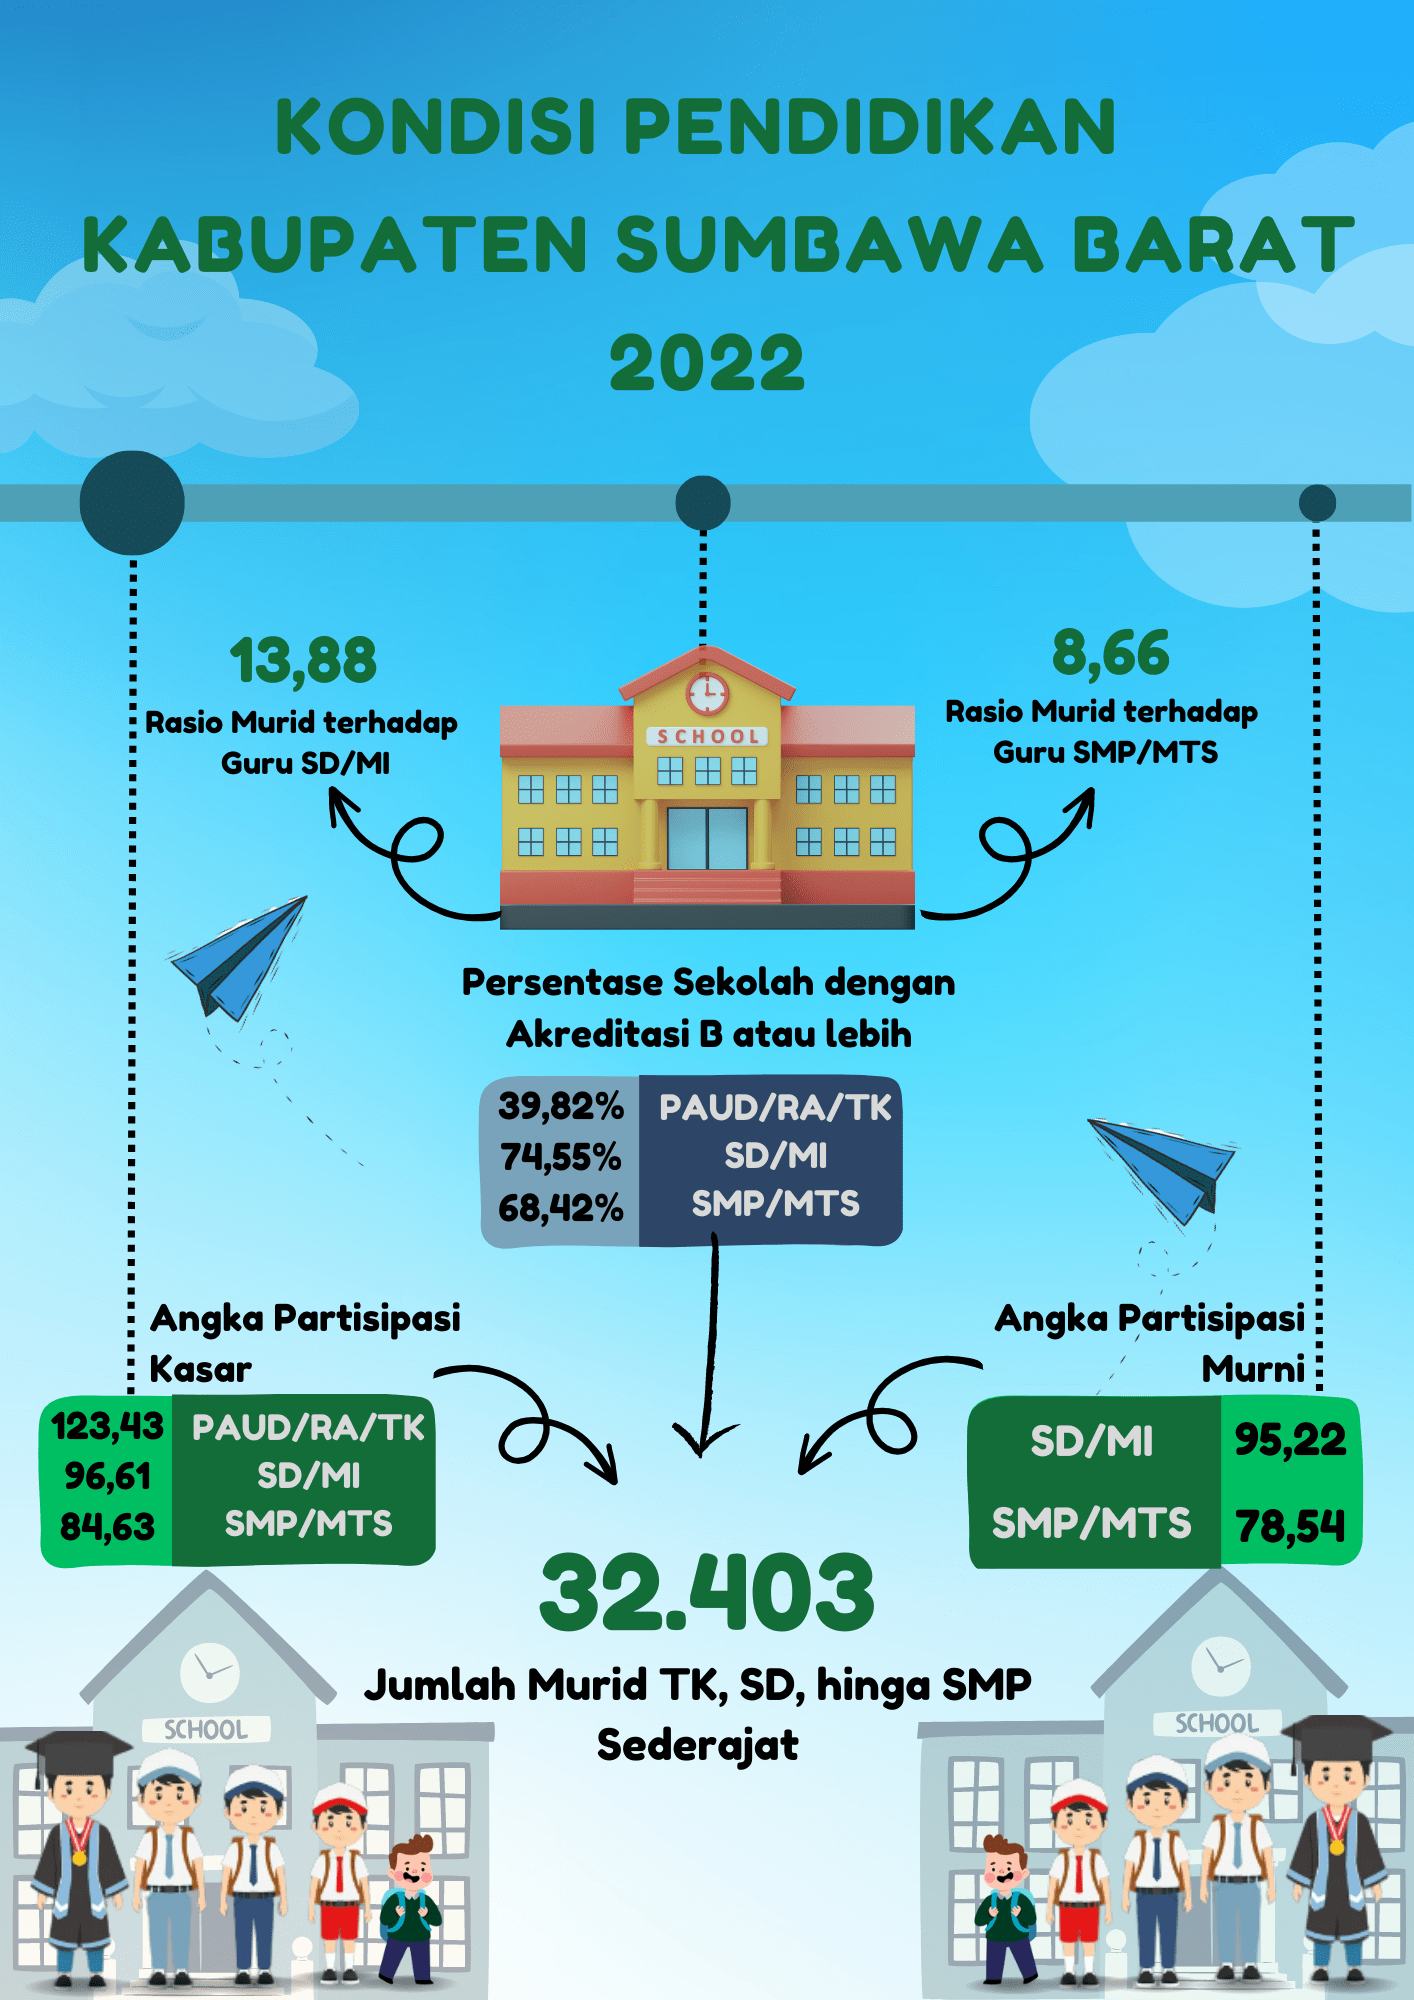 Kondisi Pendidikan Kabupaten Sumbawa Barat 2022